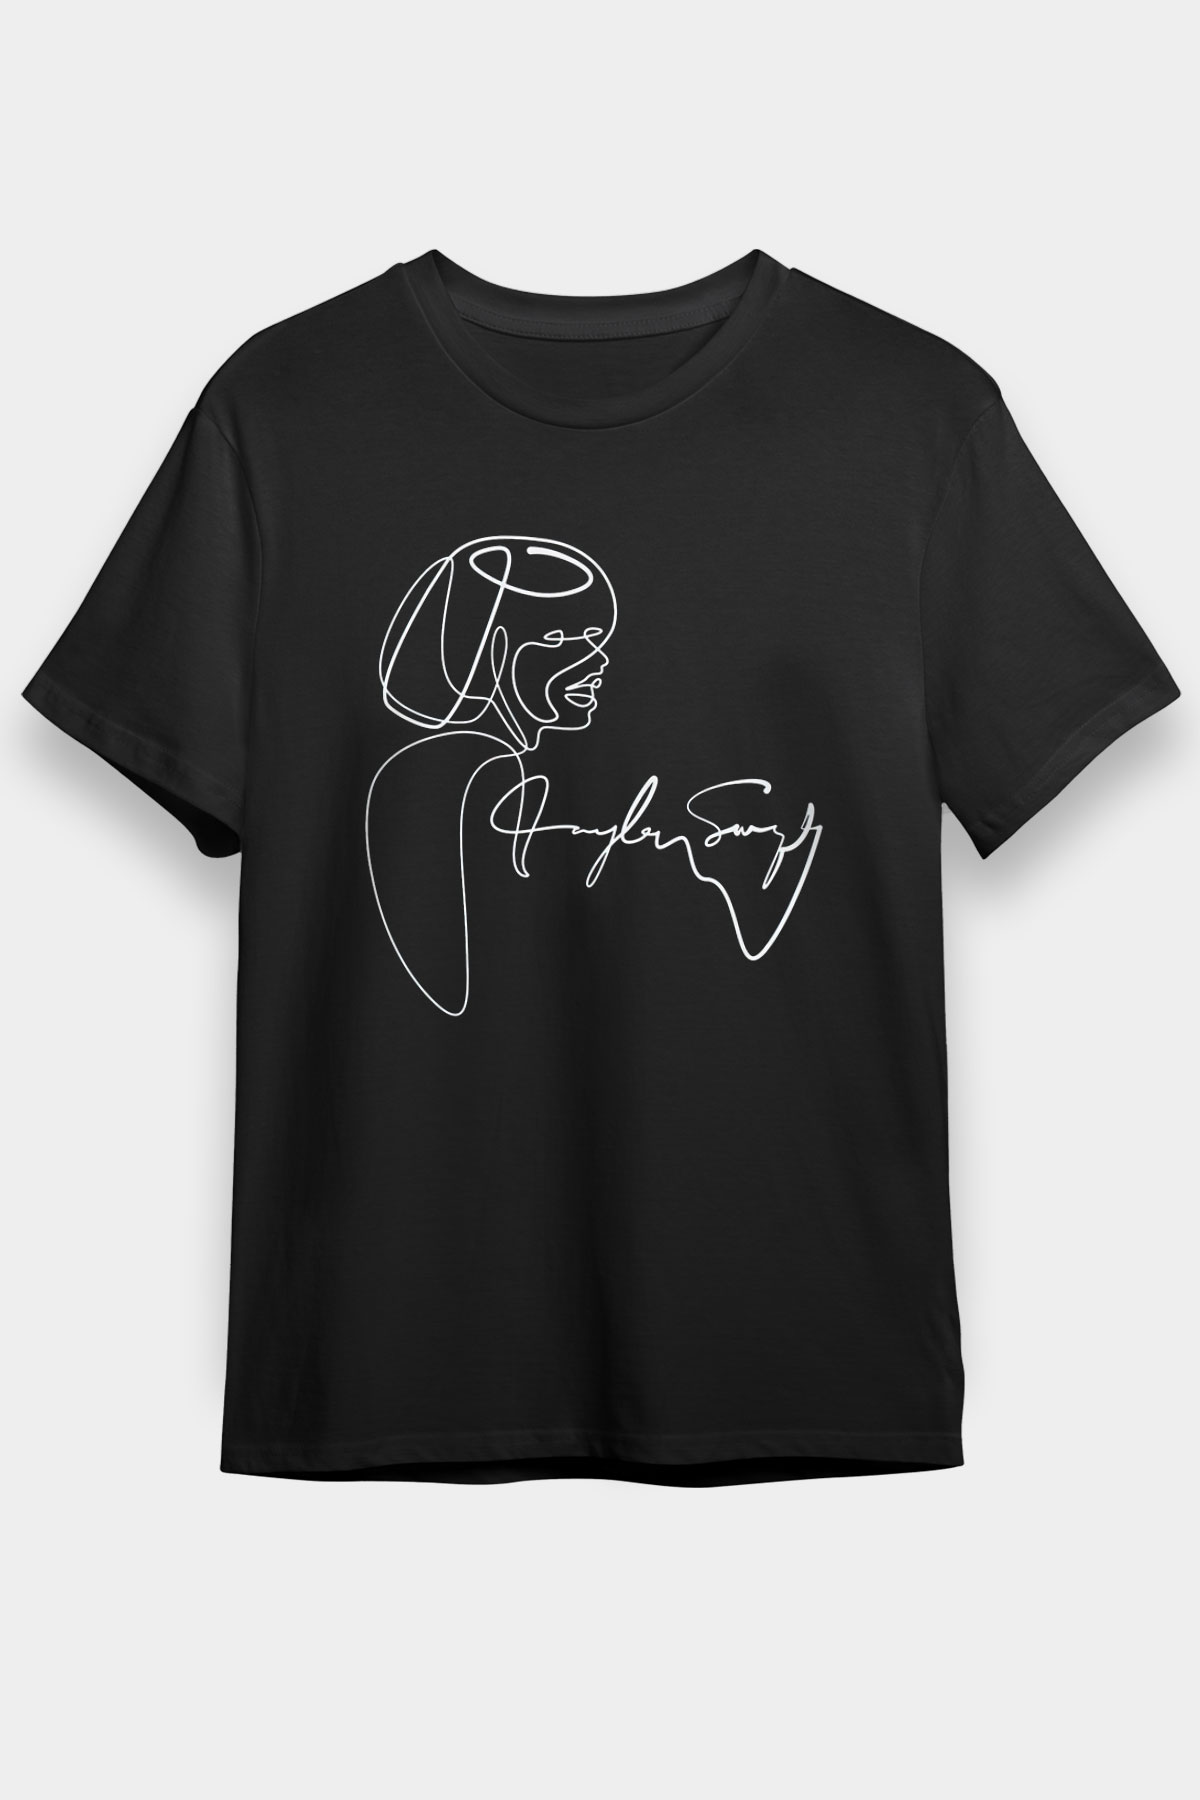 Taylor Swift T shirt,Music Tshirt 01/